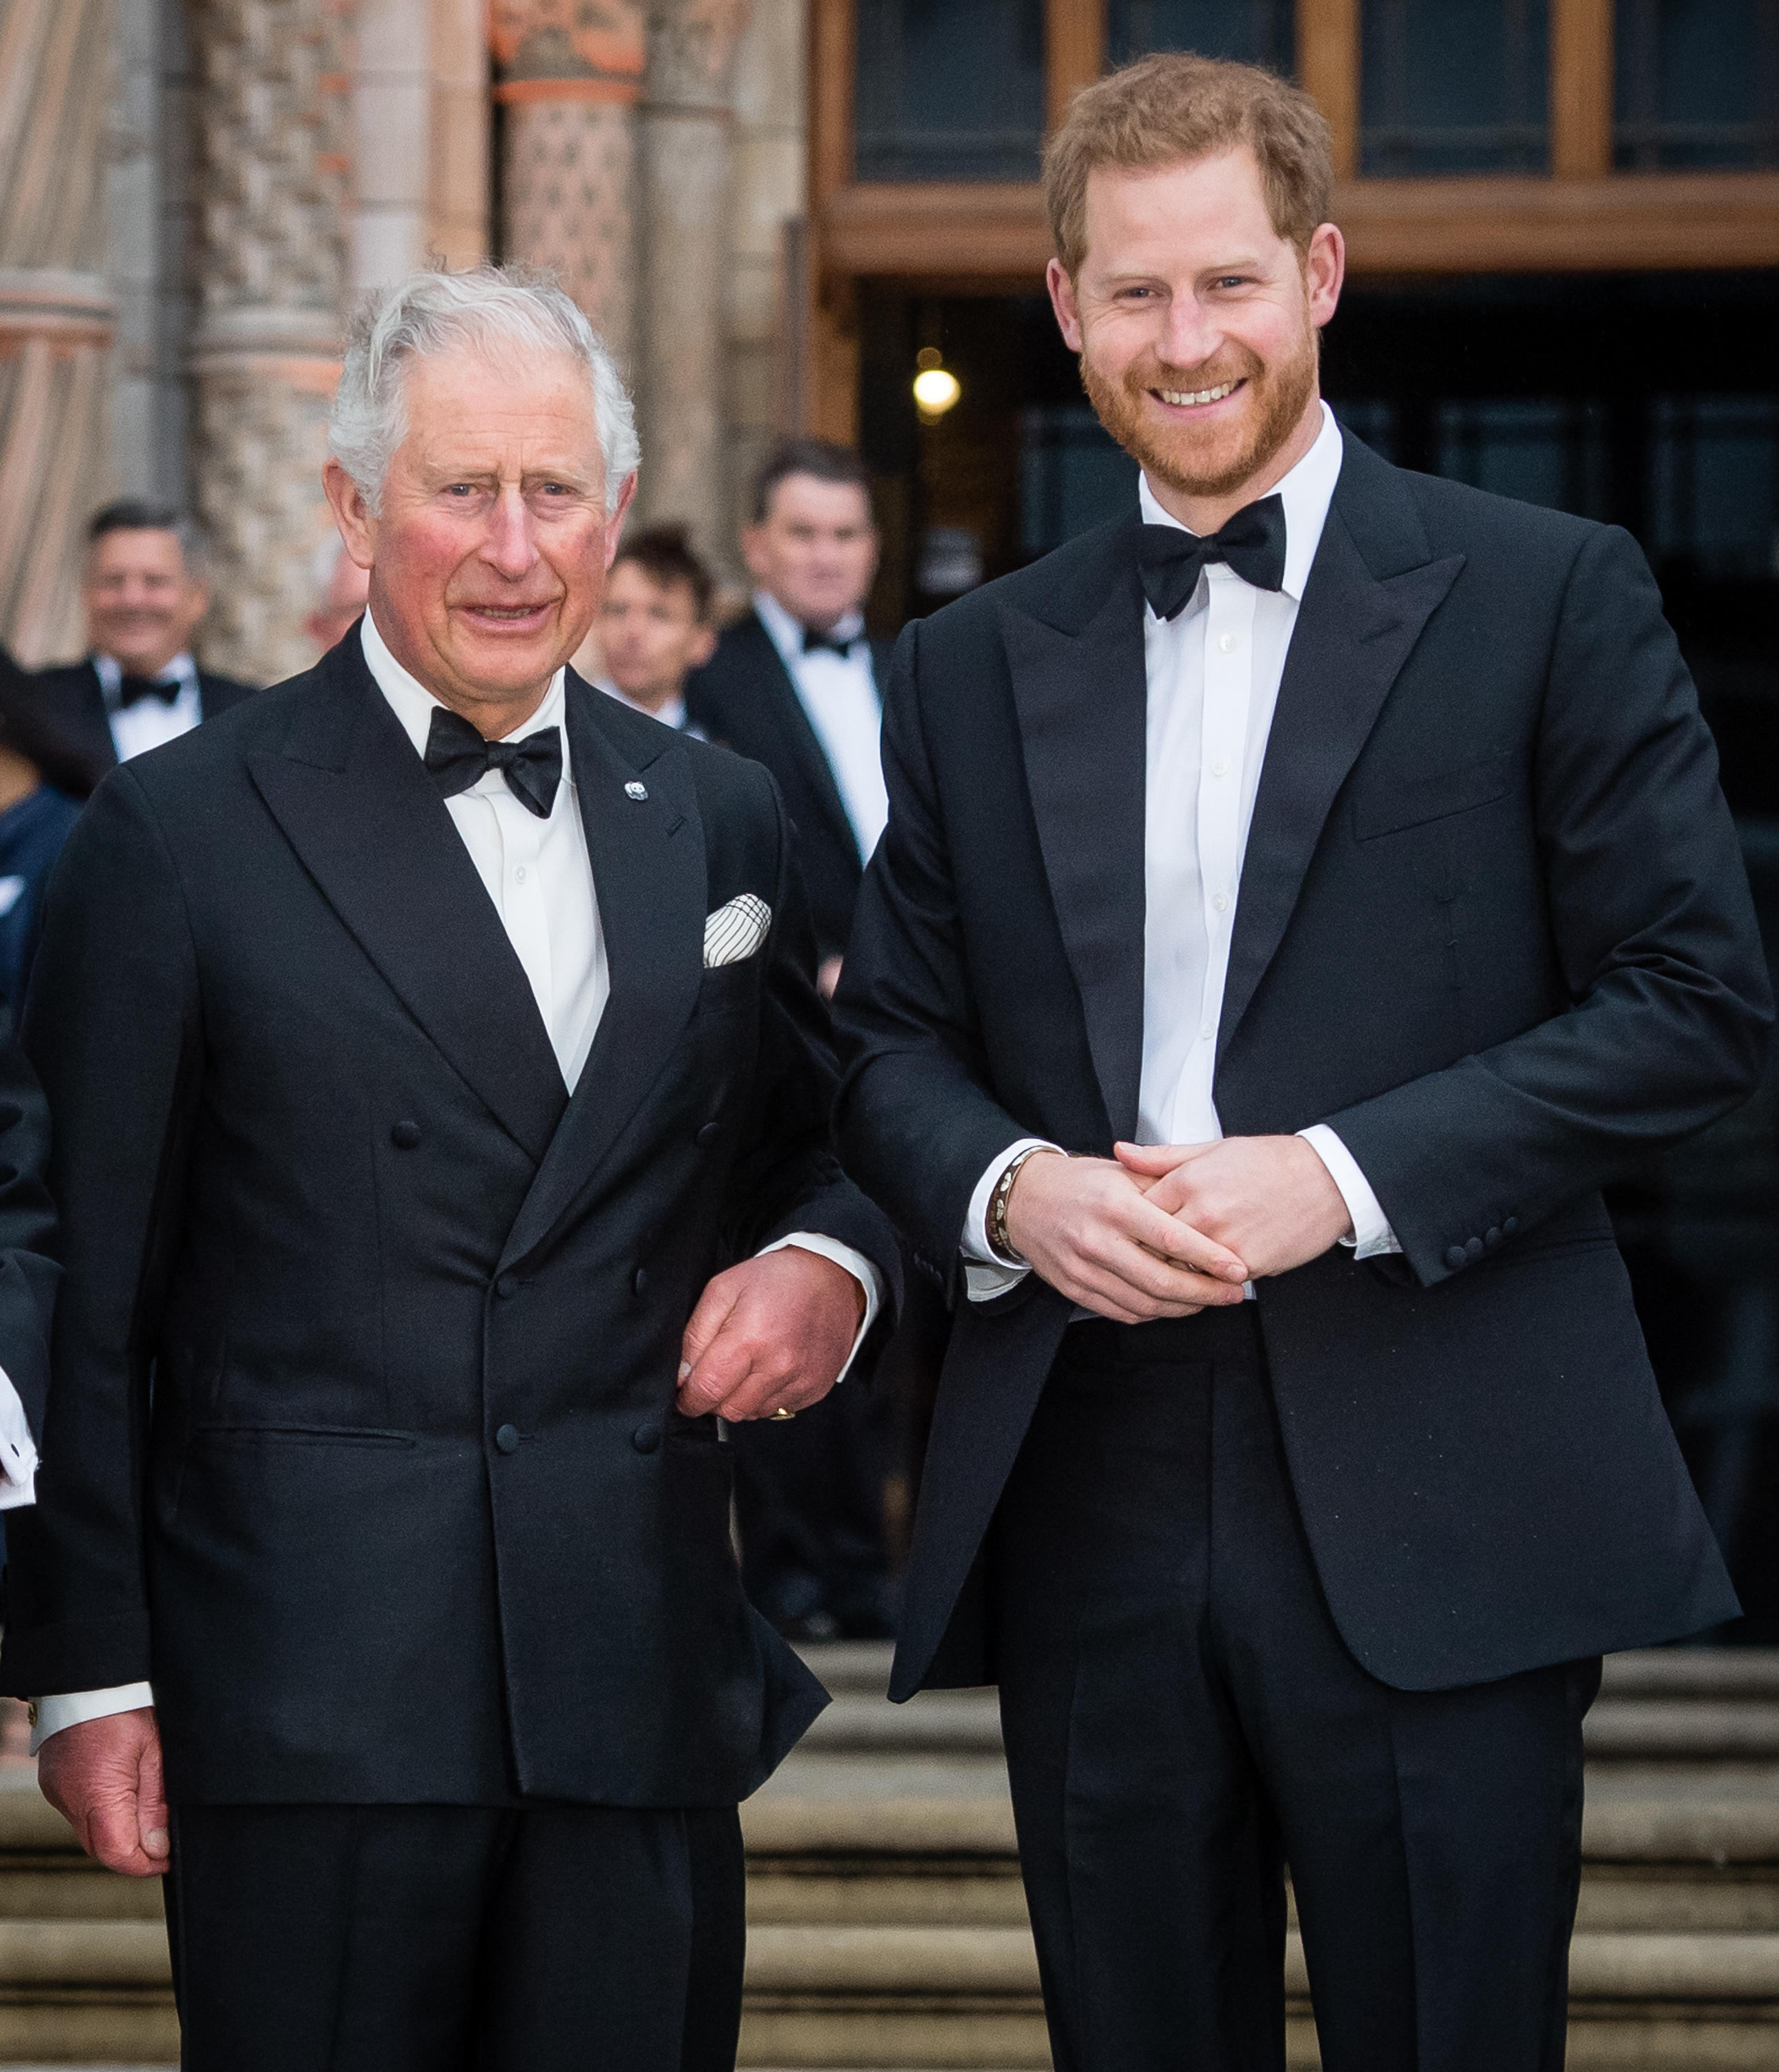 El rey Charles y el príncipe Harry asisten al estreno mundial de "Our Planet" en el Museo de Historia Natural el 4 de abril de 2019 en Londres, Inglaterra | Fuente: Getty Images